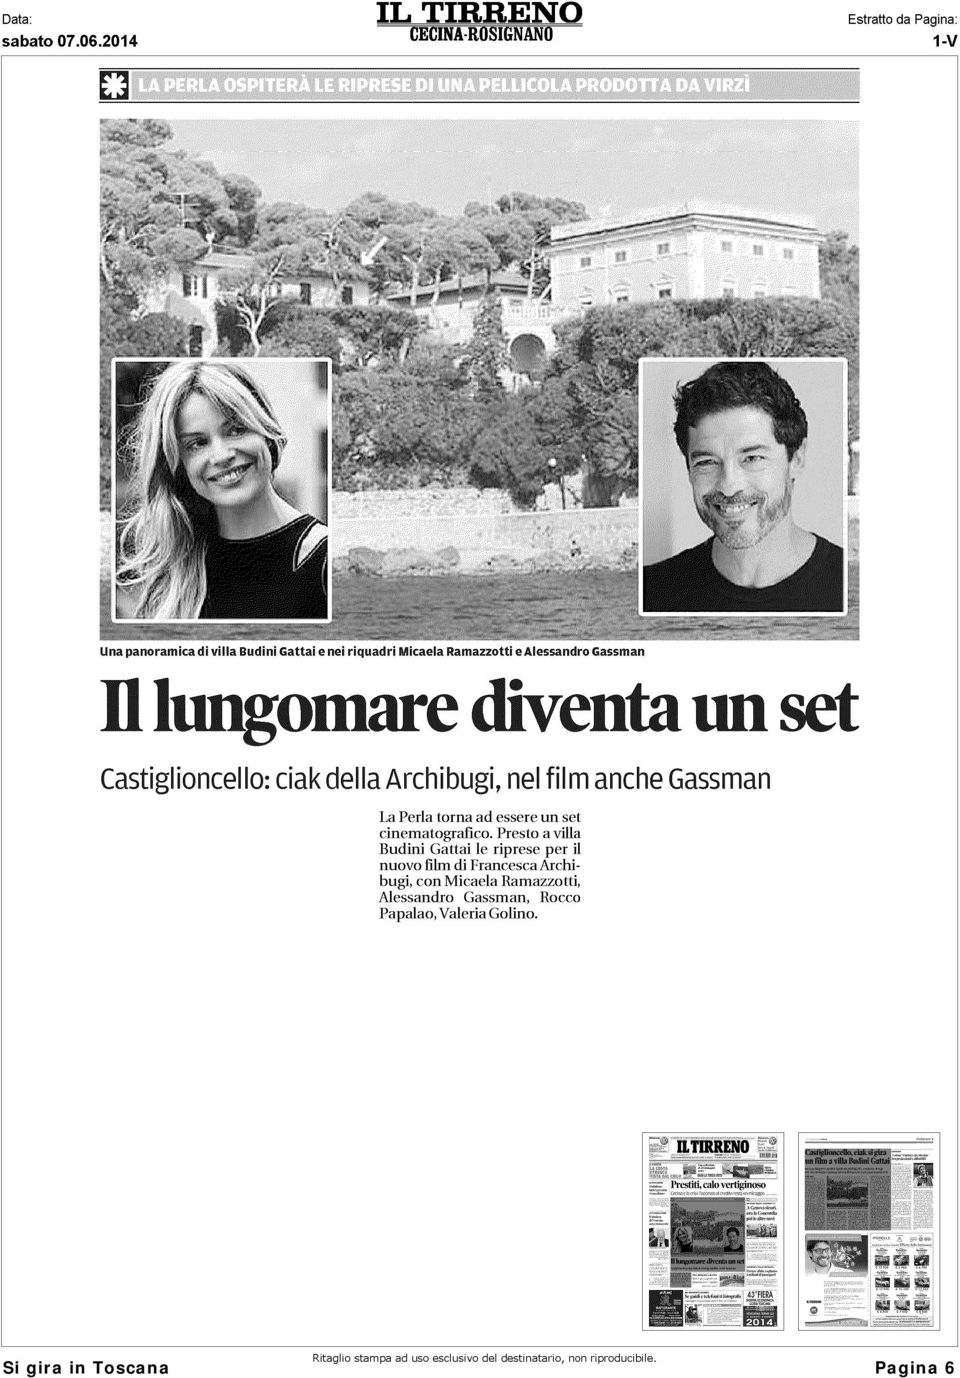 Presto a villa Budini Gattai le riprese per il nuovo film di Francesca Archibugi, con Micaela Ramazzotti,